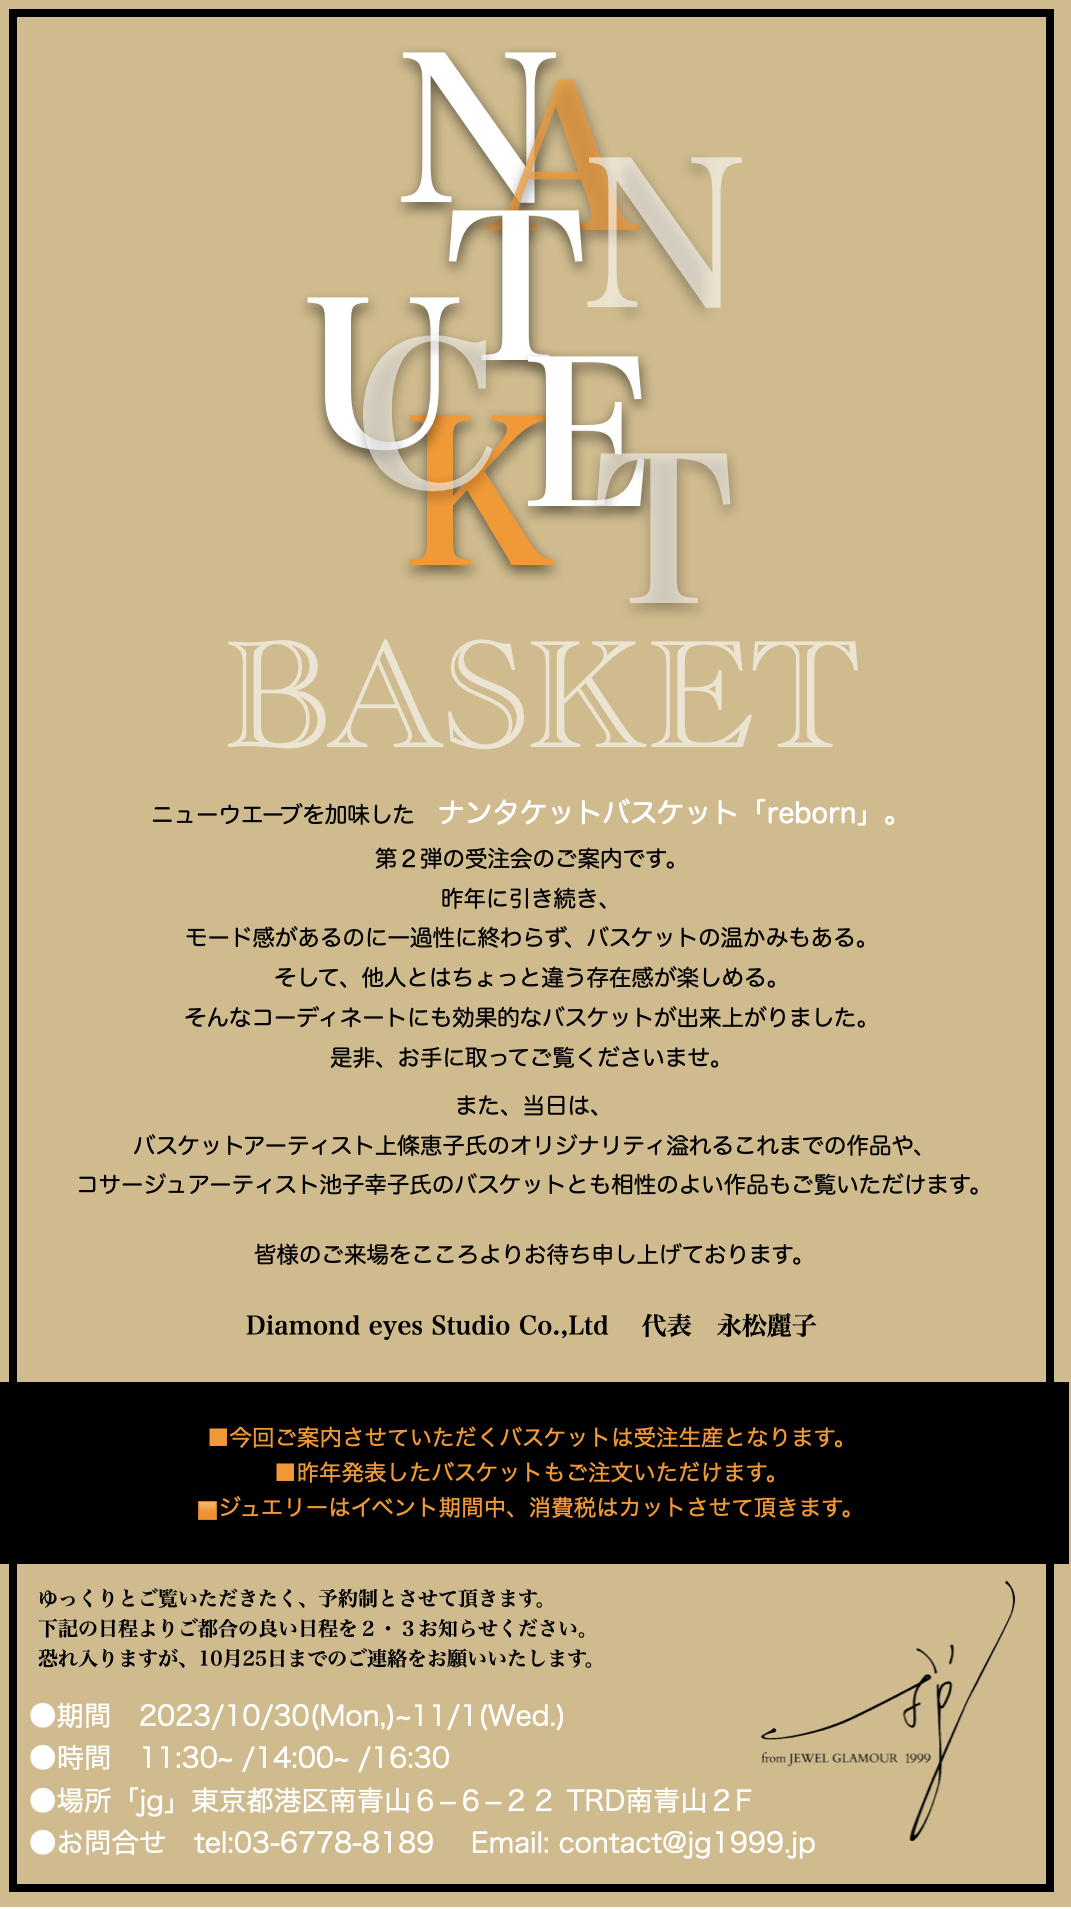 ナンタケットバスケット「REBORN2」発売のお知らせ